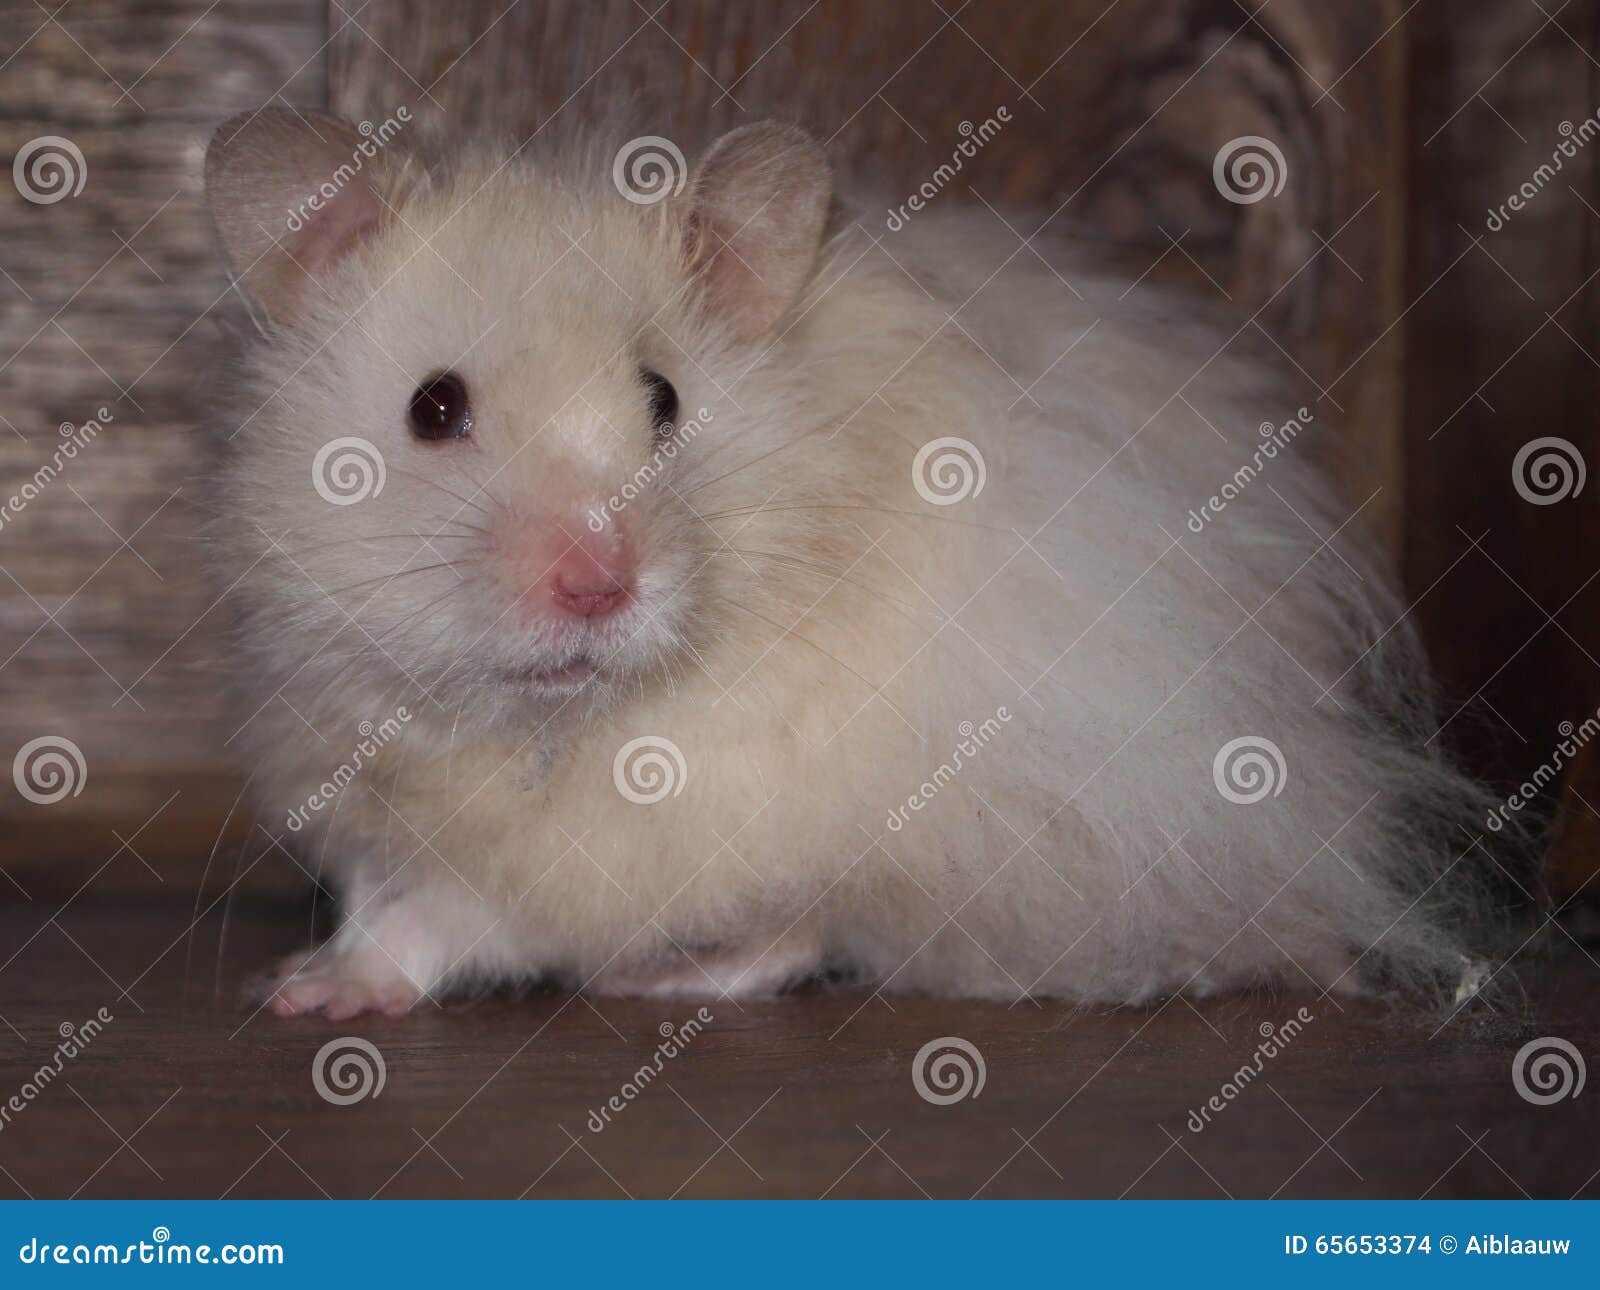 white fluffy hamster